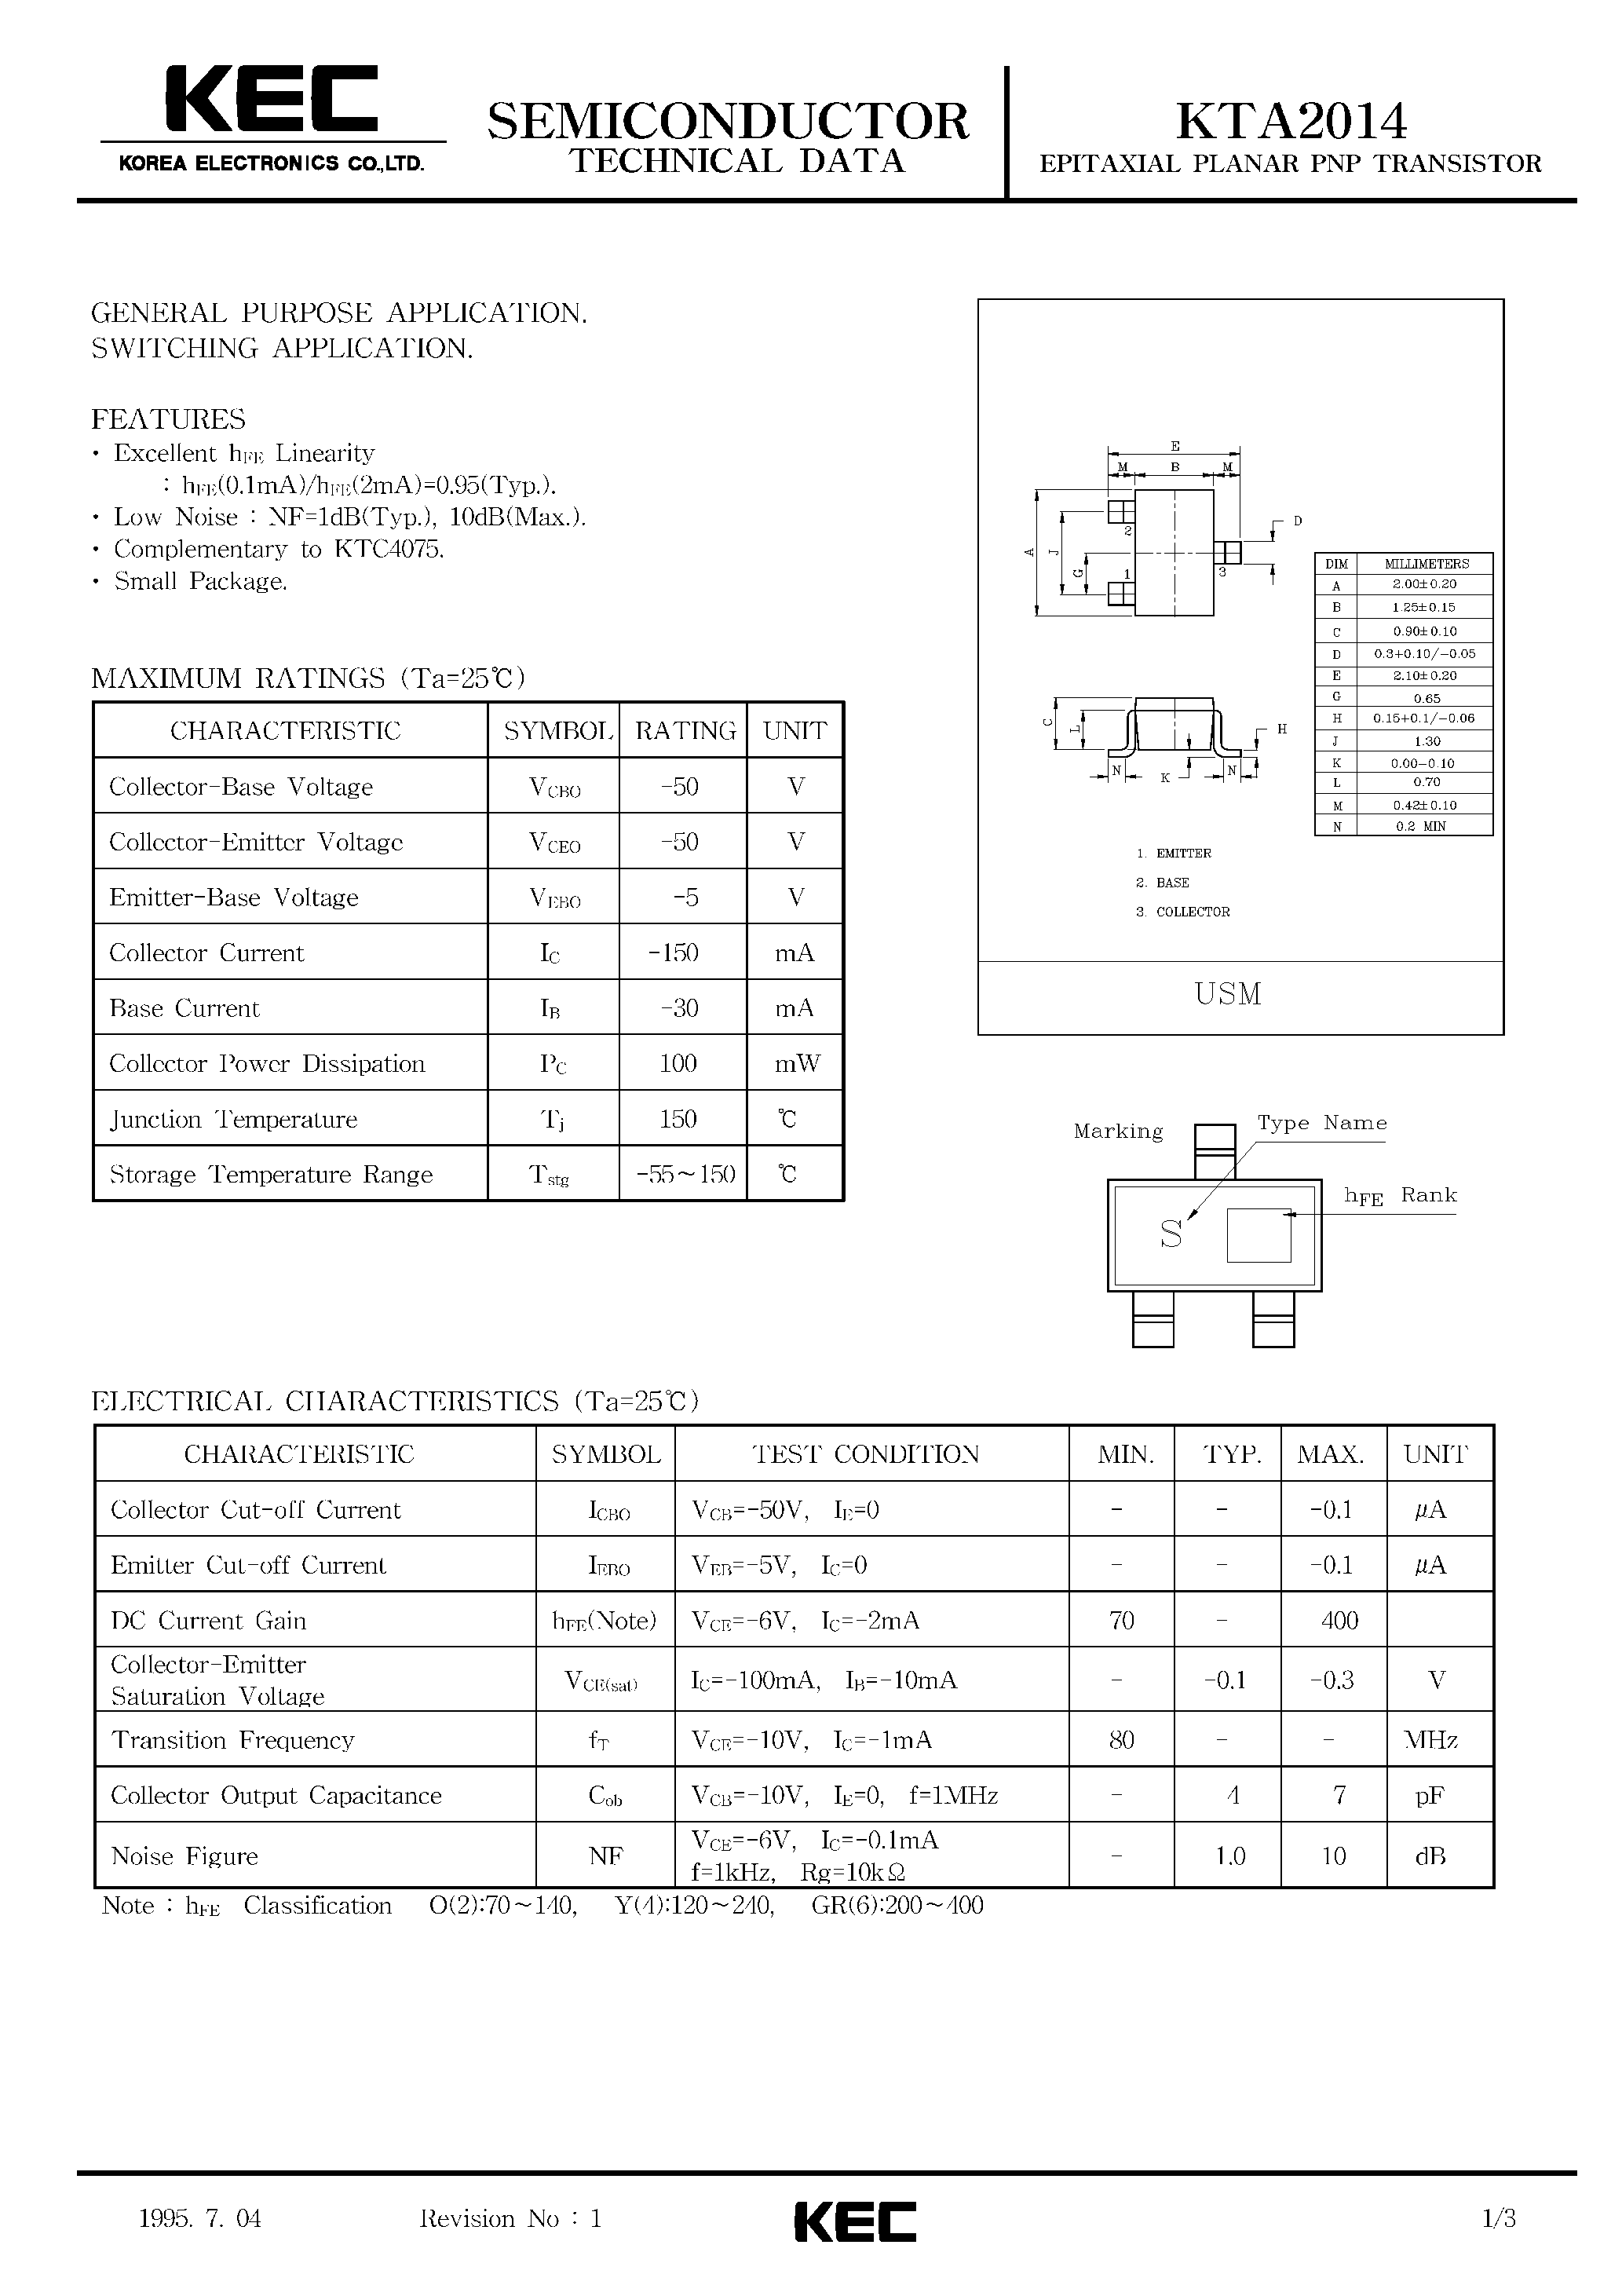 Datasheet KTA2014 - EPITAXIAL PLANAR PNP TRANSISTOR (GENERAL PURPOSE/ SWITCHING) page 1